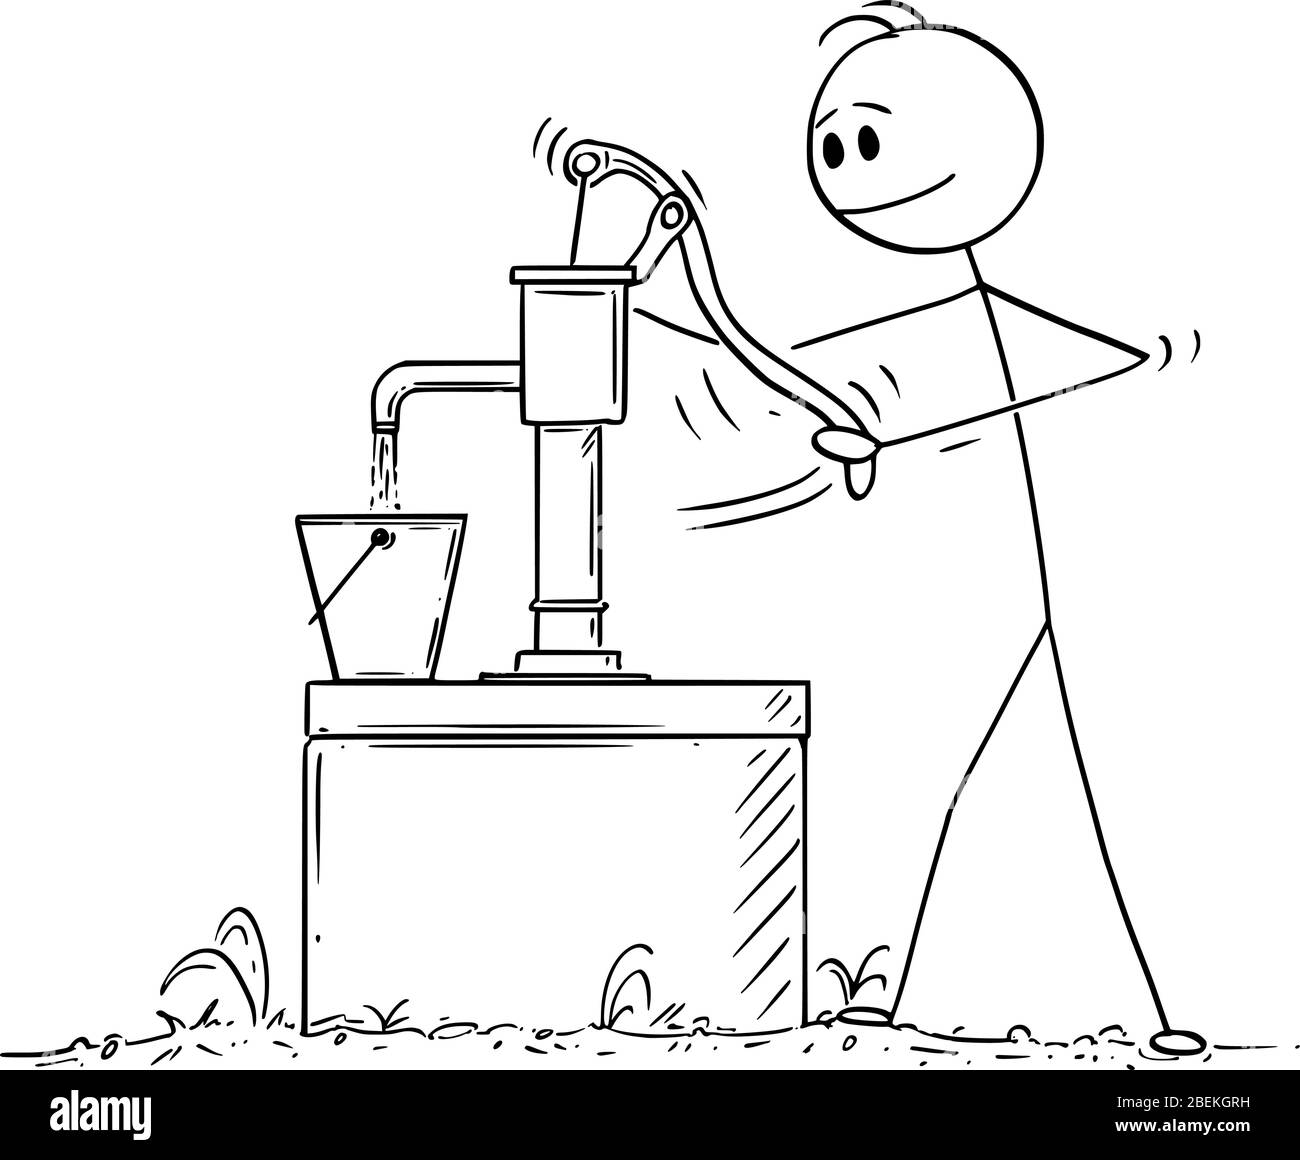 Figura di bastone cartoon vettoriale disegno illustrazione concettuale di uomo o agricoltore che pompa o traina acqua da bene . Illustrazione Vettoriale